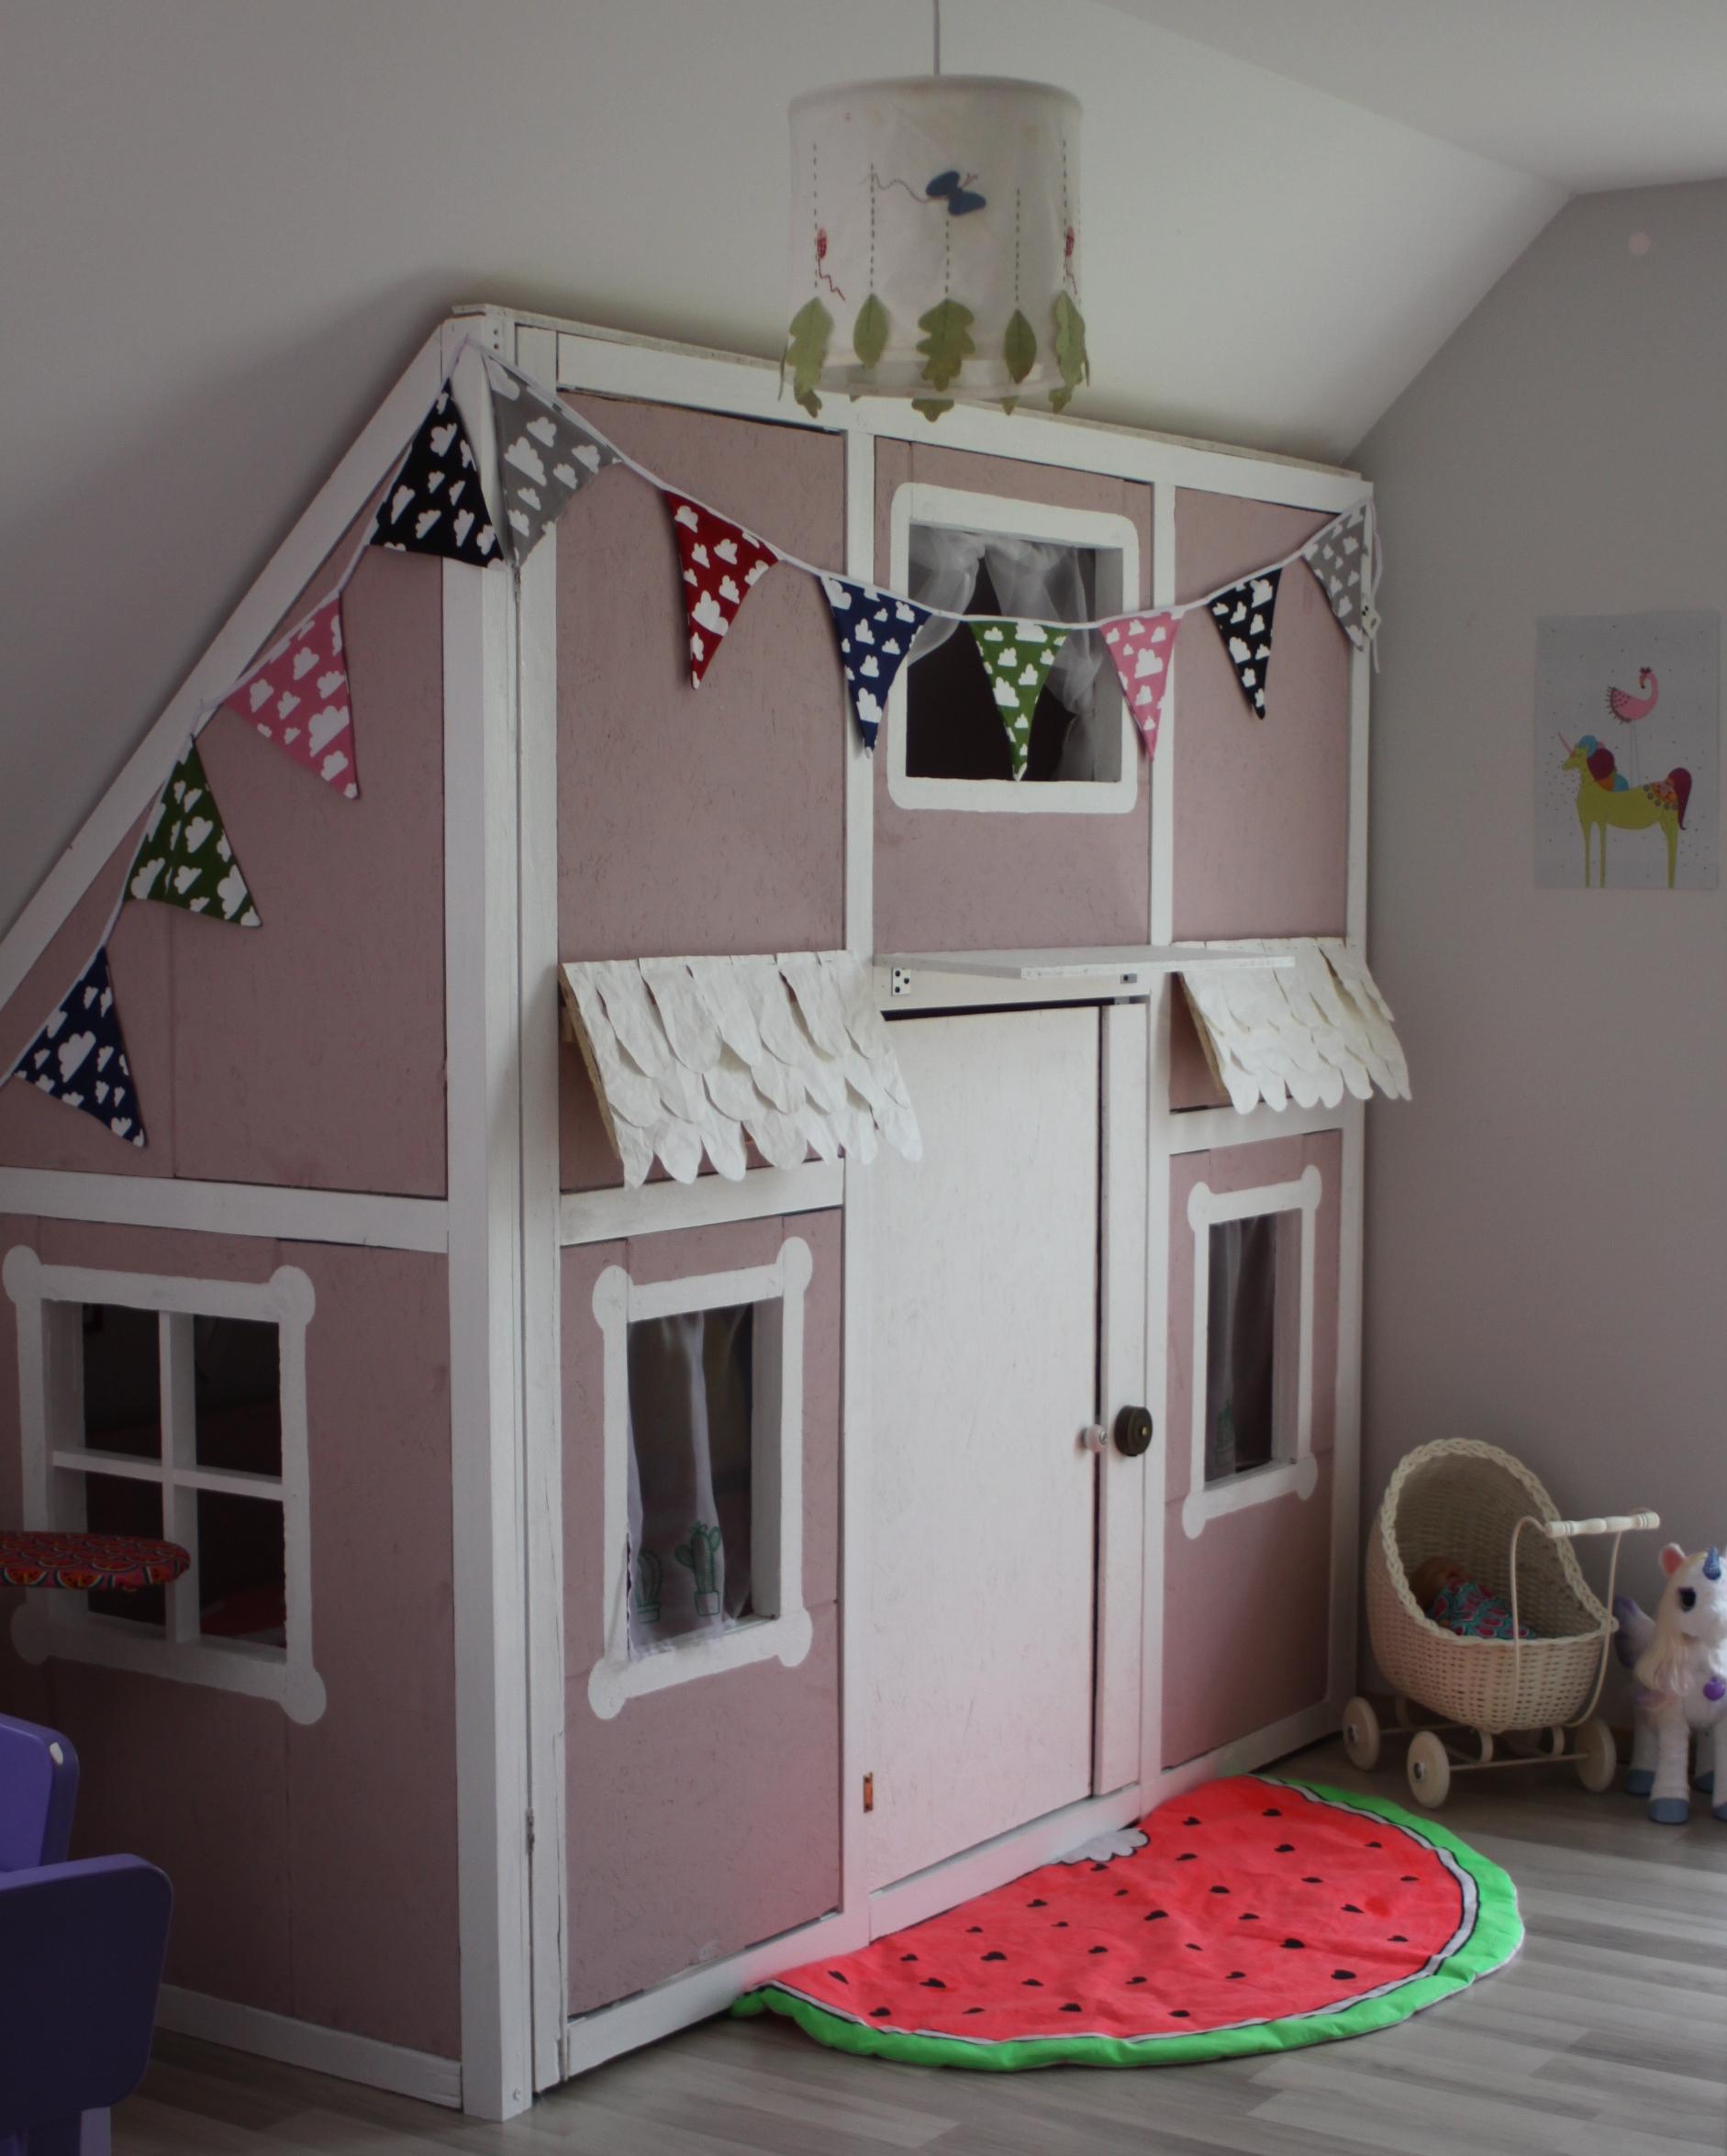 DIY - Hausbett & Spielzimmer in einem #diy #spielzimmer ©Metterschling und Maulwurfn